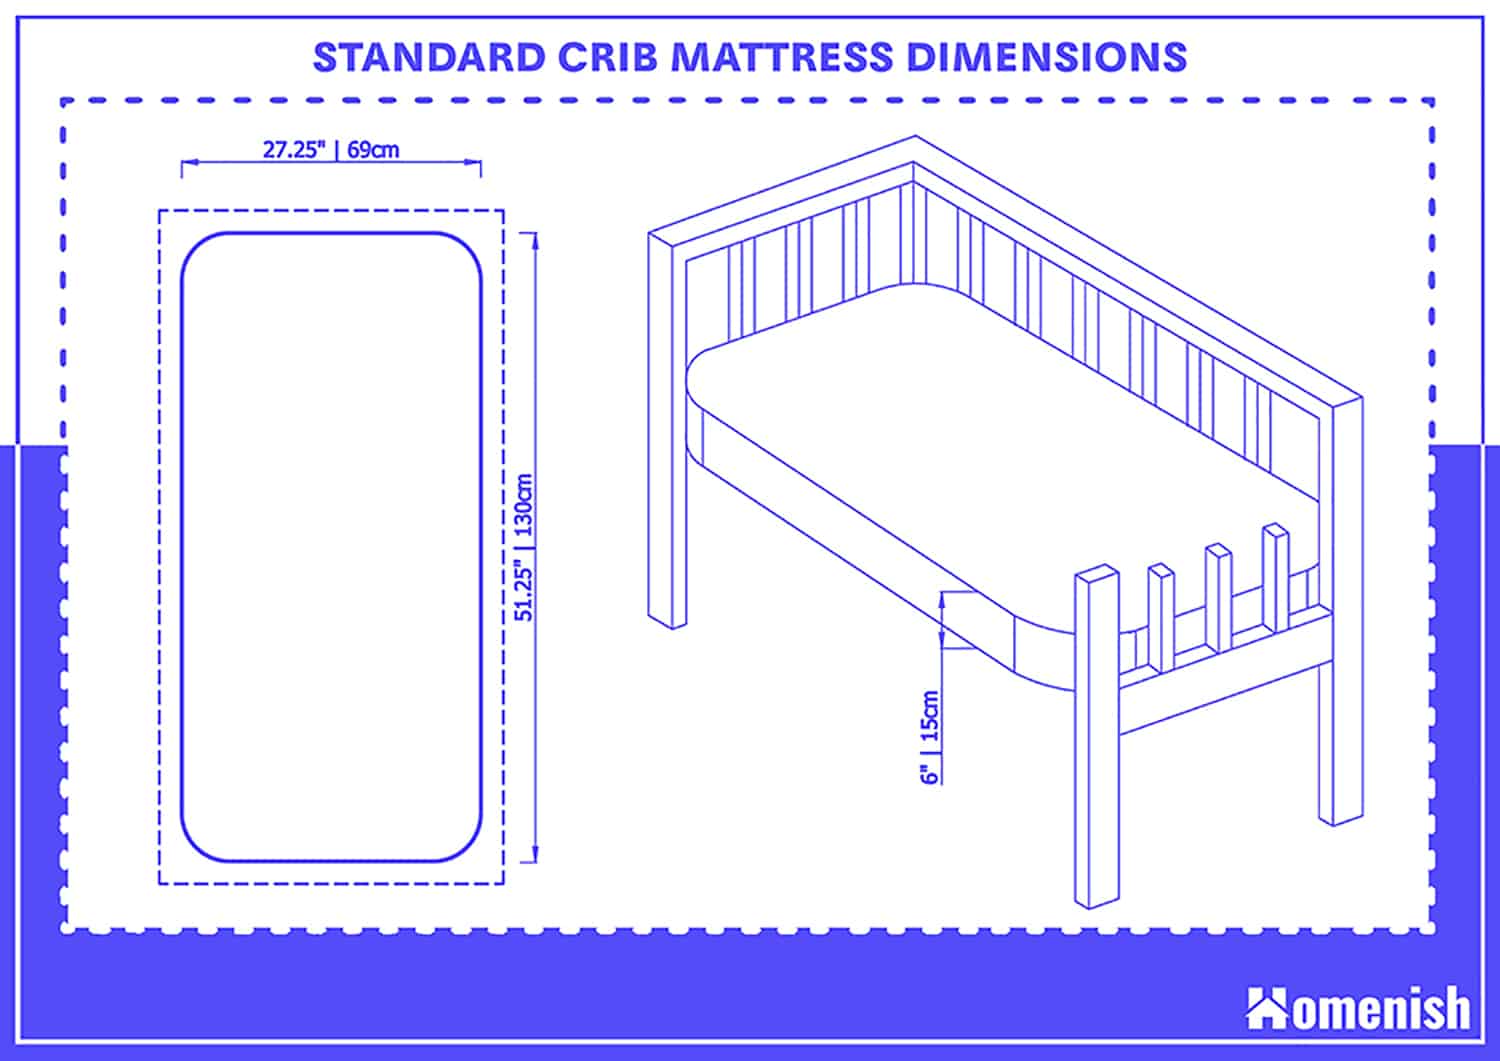 Standard Crib Mattress Dimensions